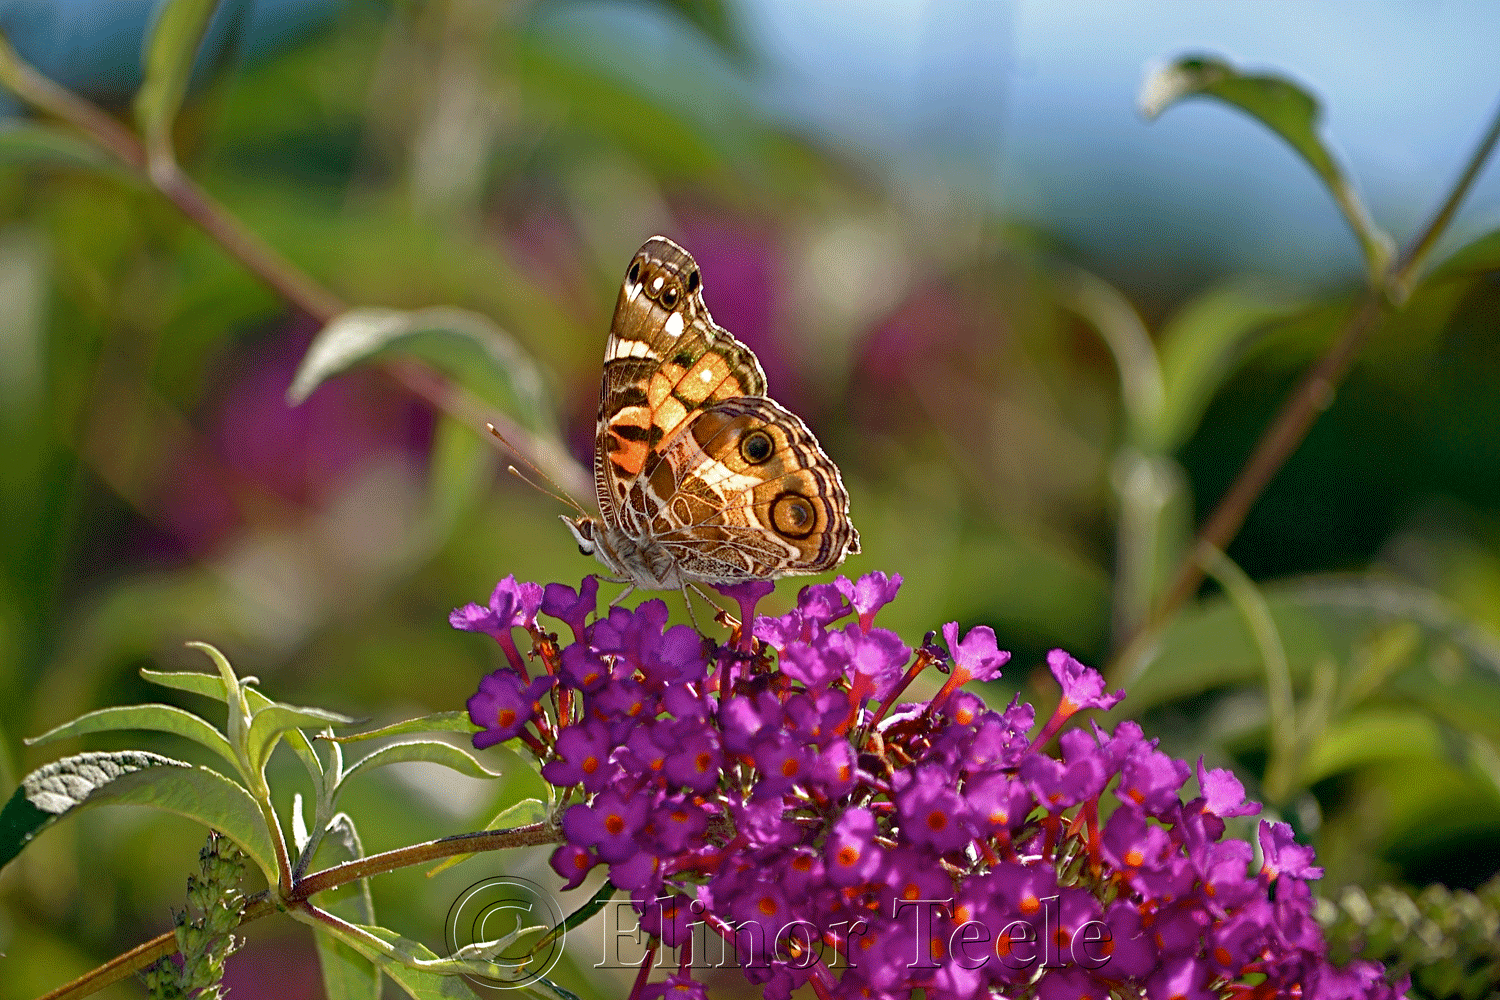 American Lady Butterfly in July